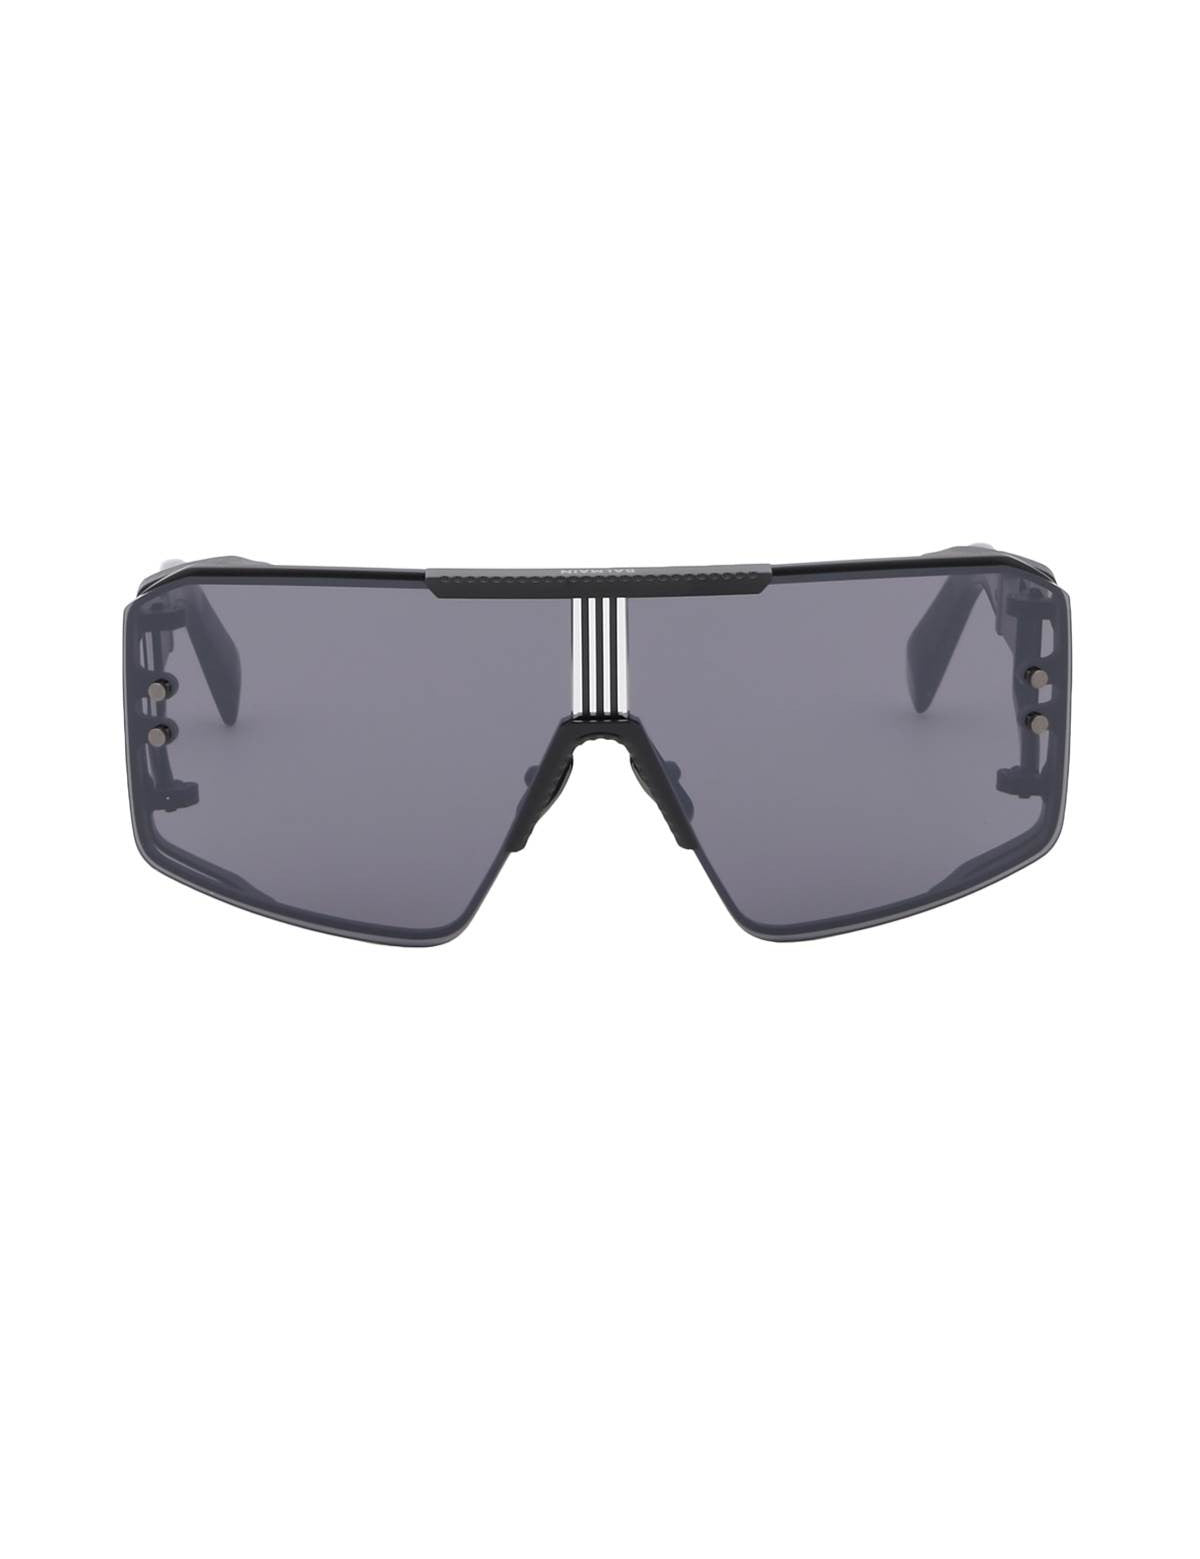 balmain-le-masque-sunglasses_2a5bb439-b806-4a13-9224-0a0dee7d7ce2.jpg